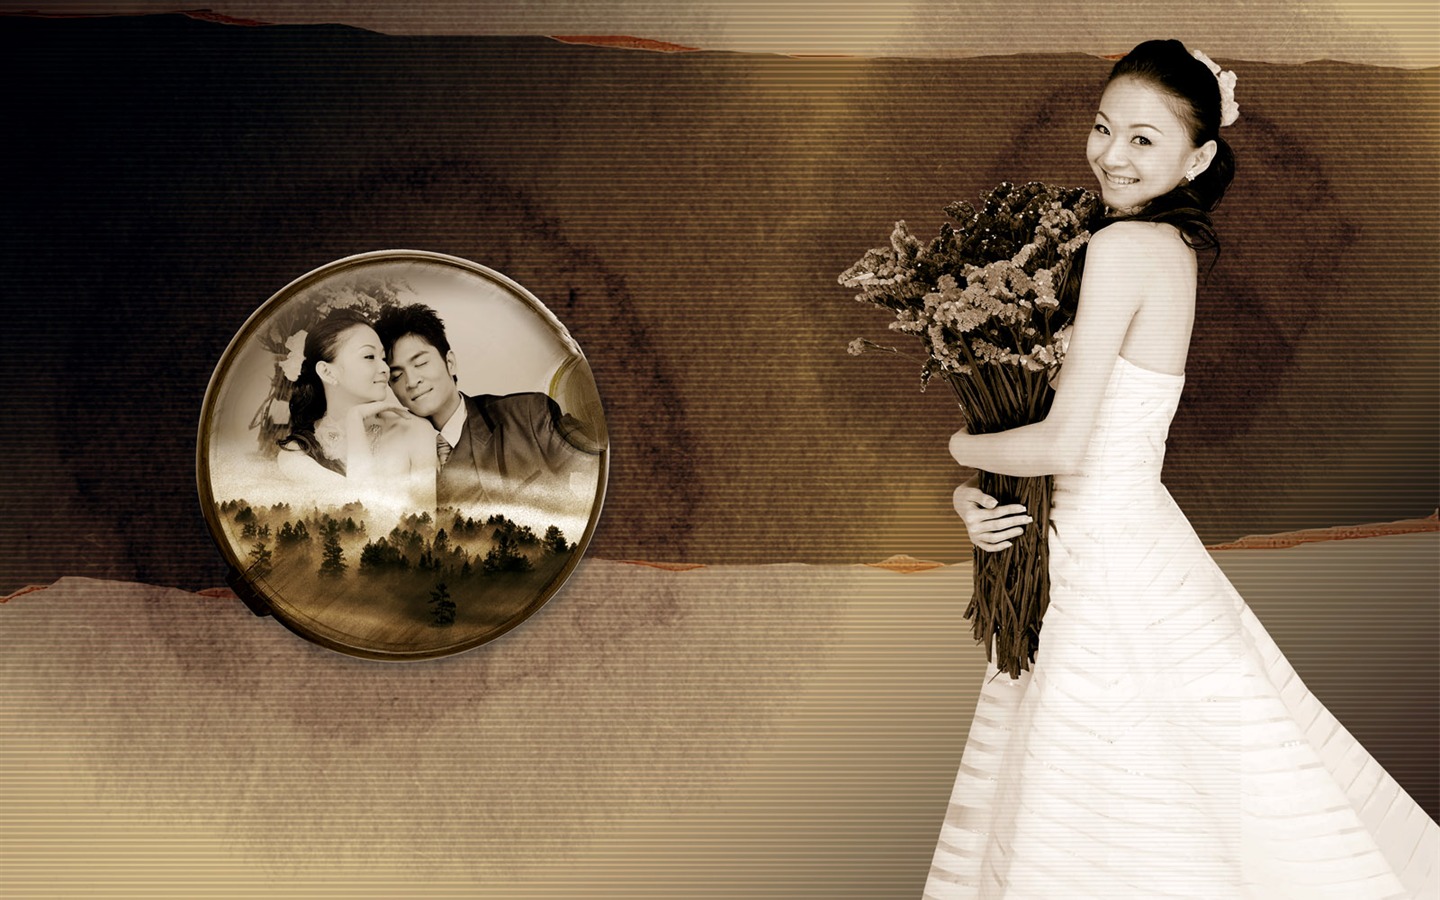 Fotografía de la boda álbum de fondo de pantalla (1) #18 - 1440x900